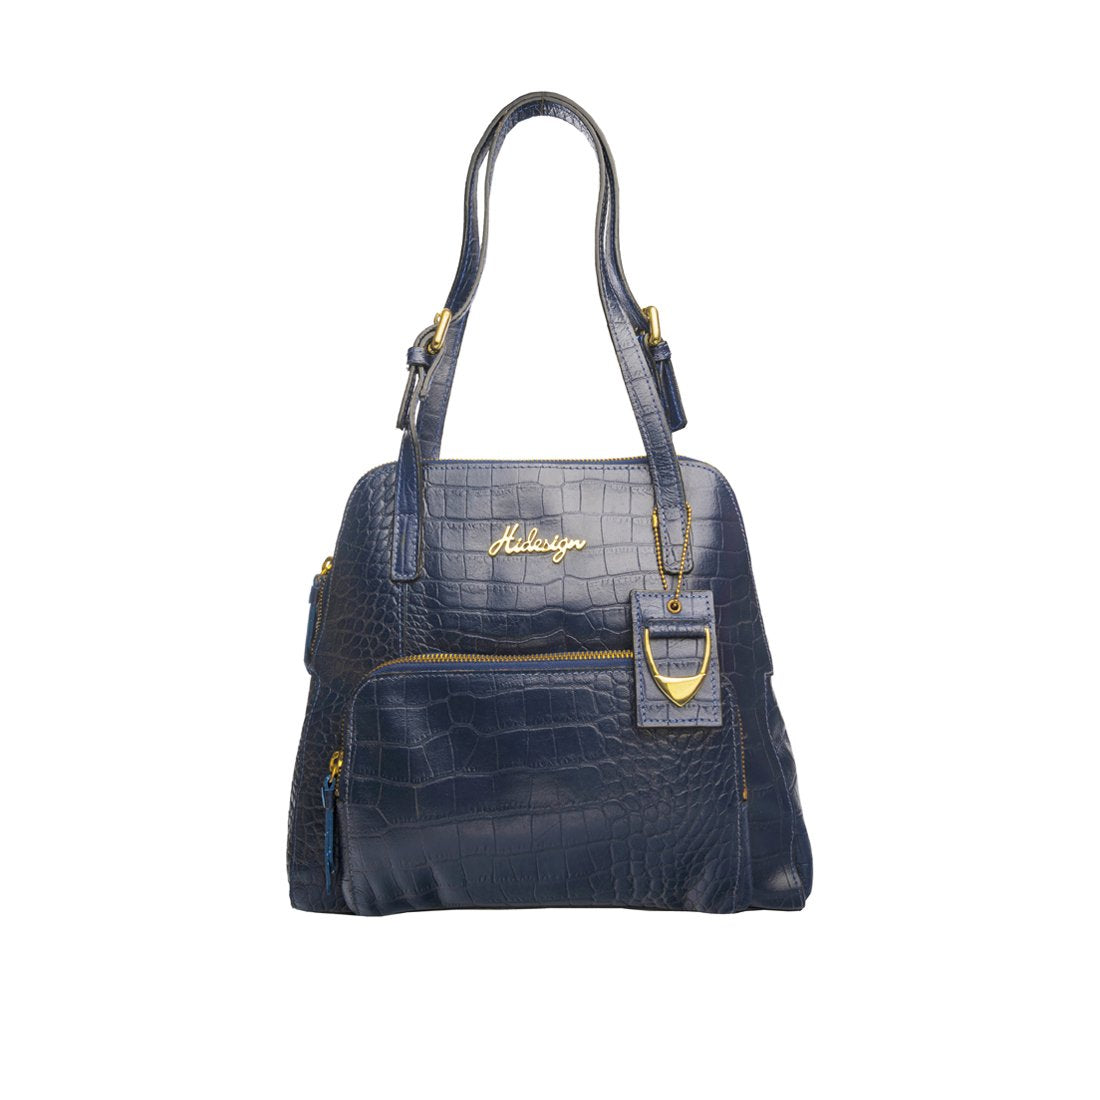 hidesign blue handbag